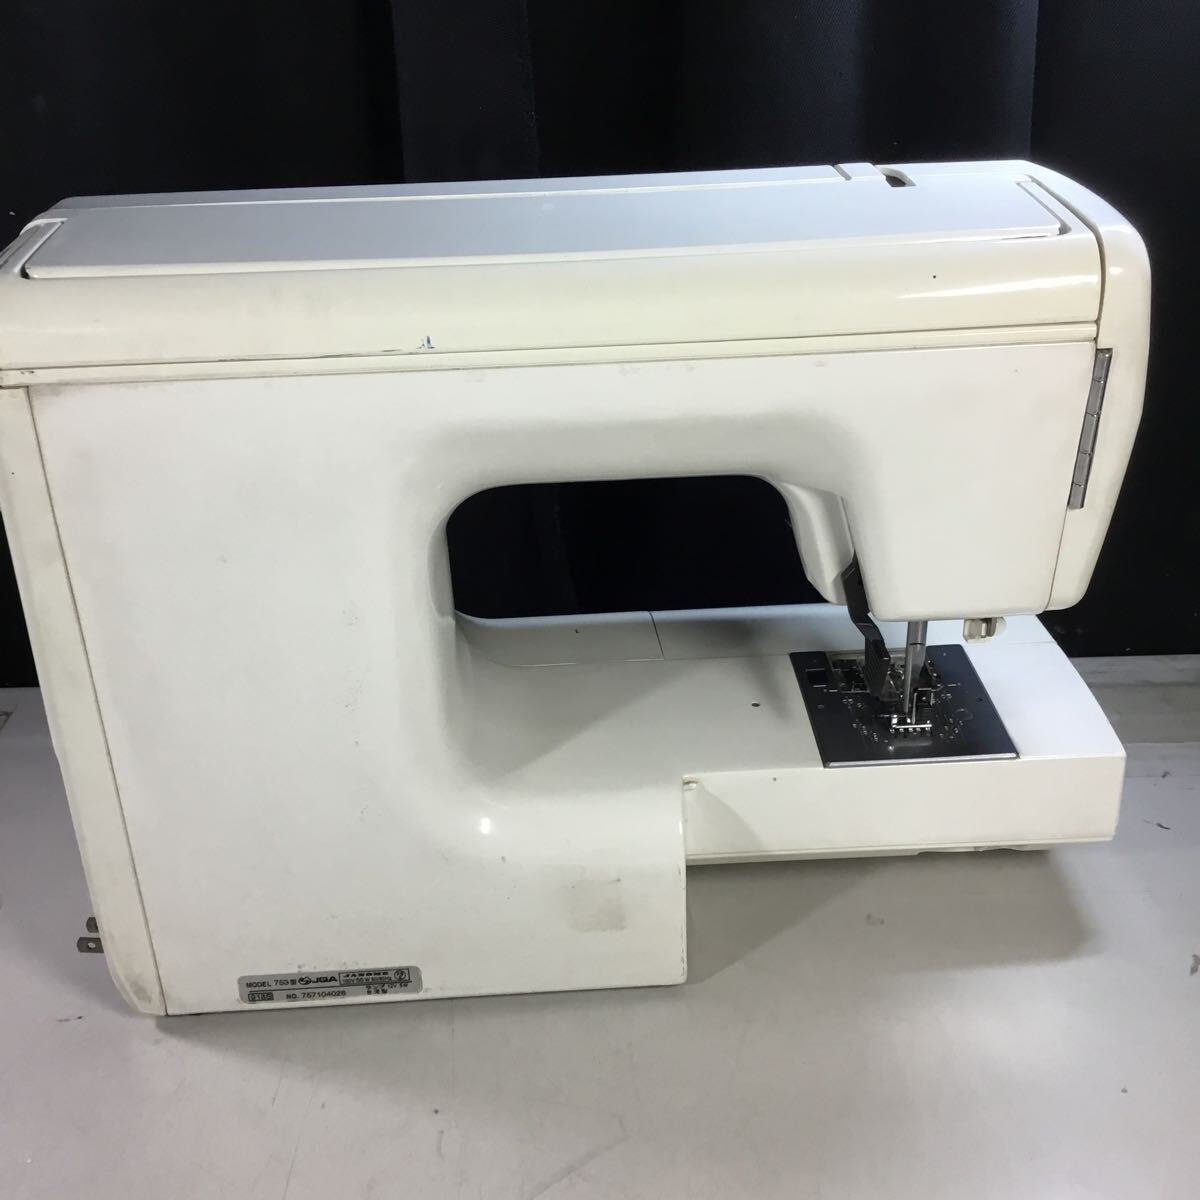 (051039F) JANOME Janome computer sewing machine 753 type sewing machine junk 